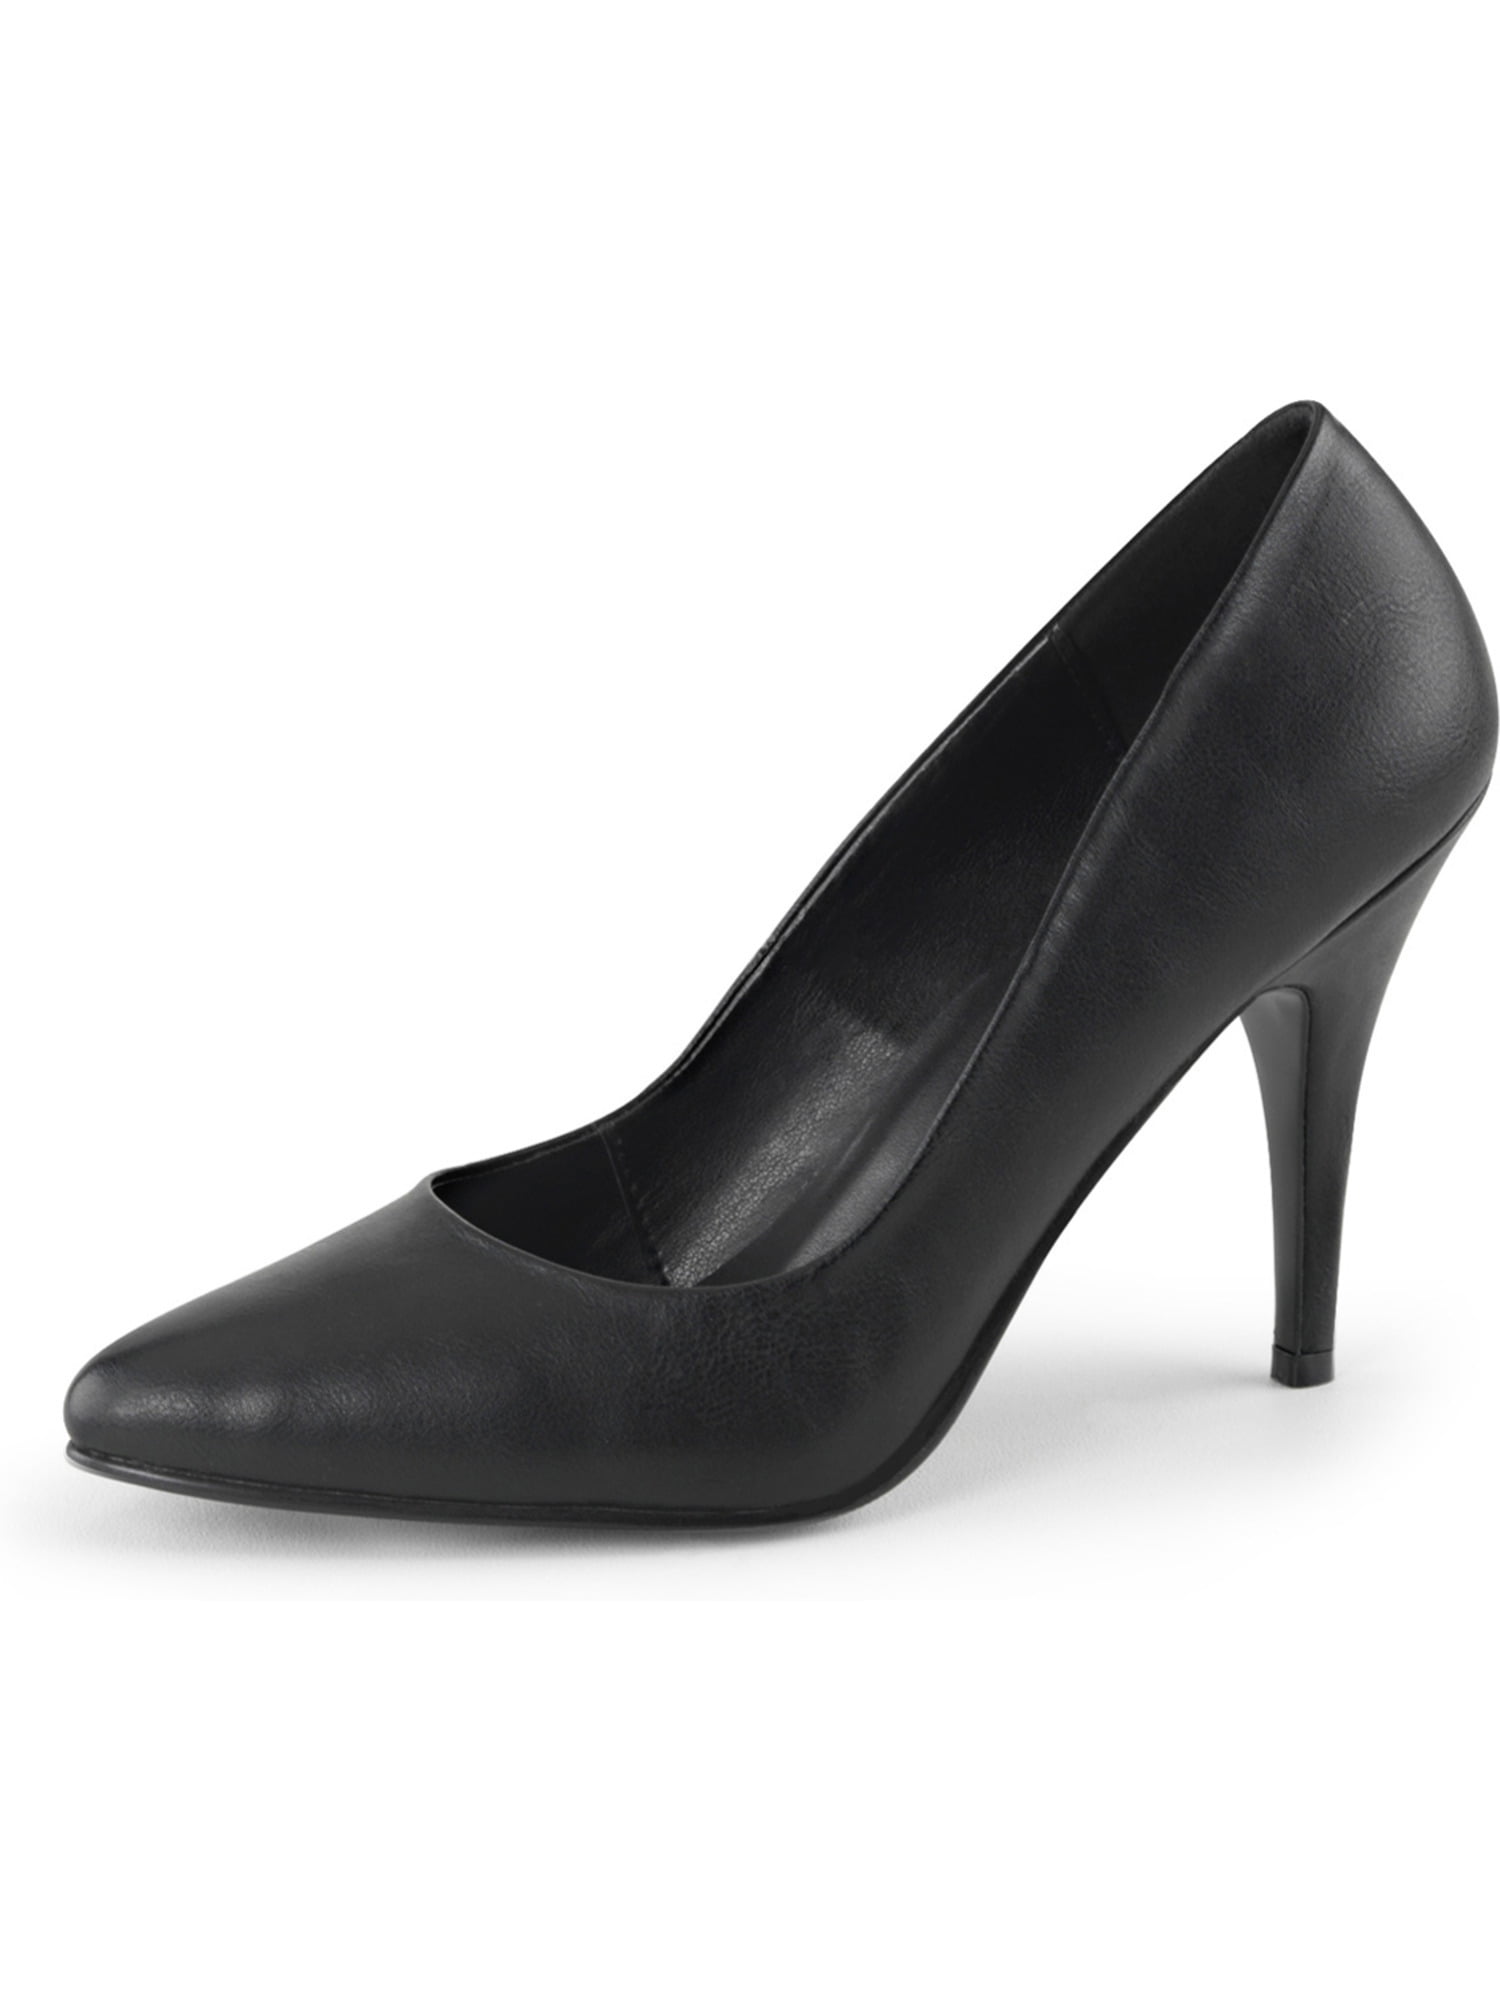 Womens Black Shoes Classic Pumps Matte 